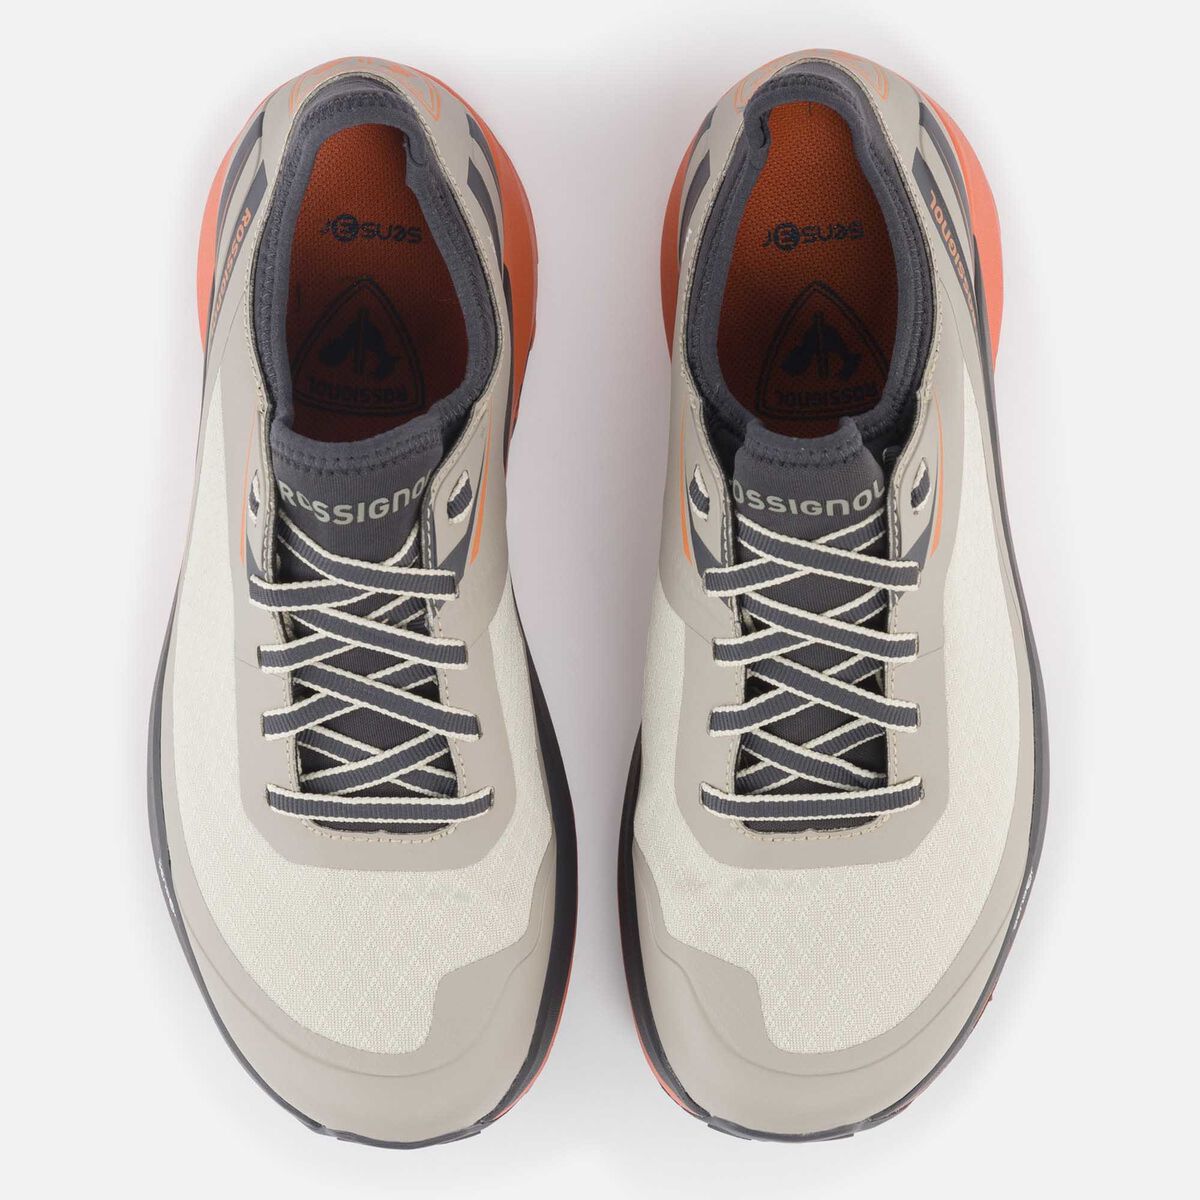 Rossignol Women's khaki waterproof Active outdoor shoes grey